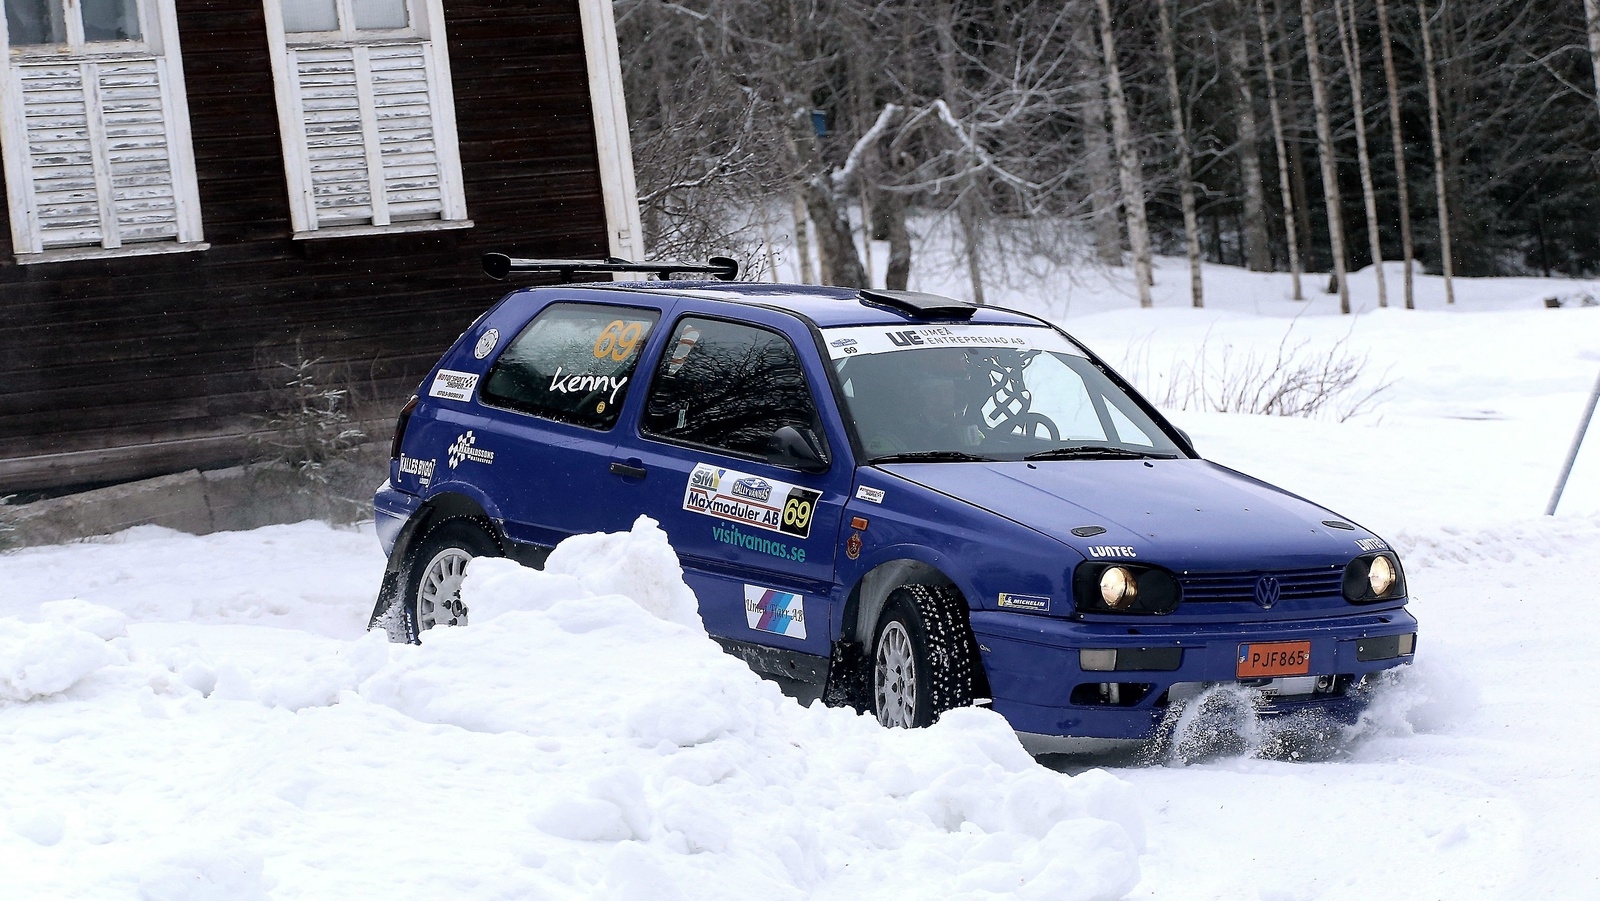 Vännäs SM-deltävling bjöd på rikligt med snö. Här är Johannes Haraldsson i aktion.                                                Foto: Jouni Laakso